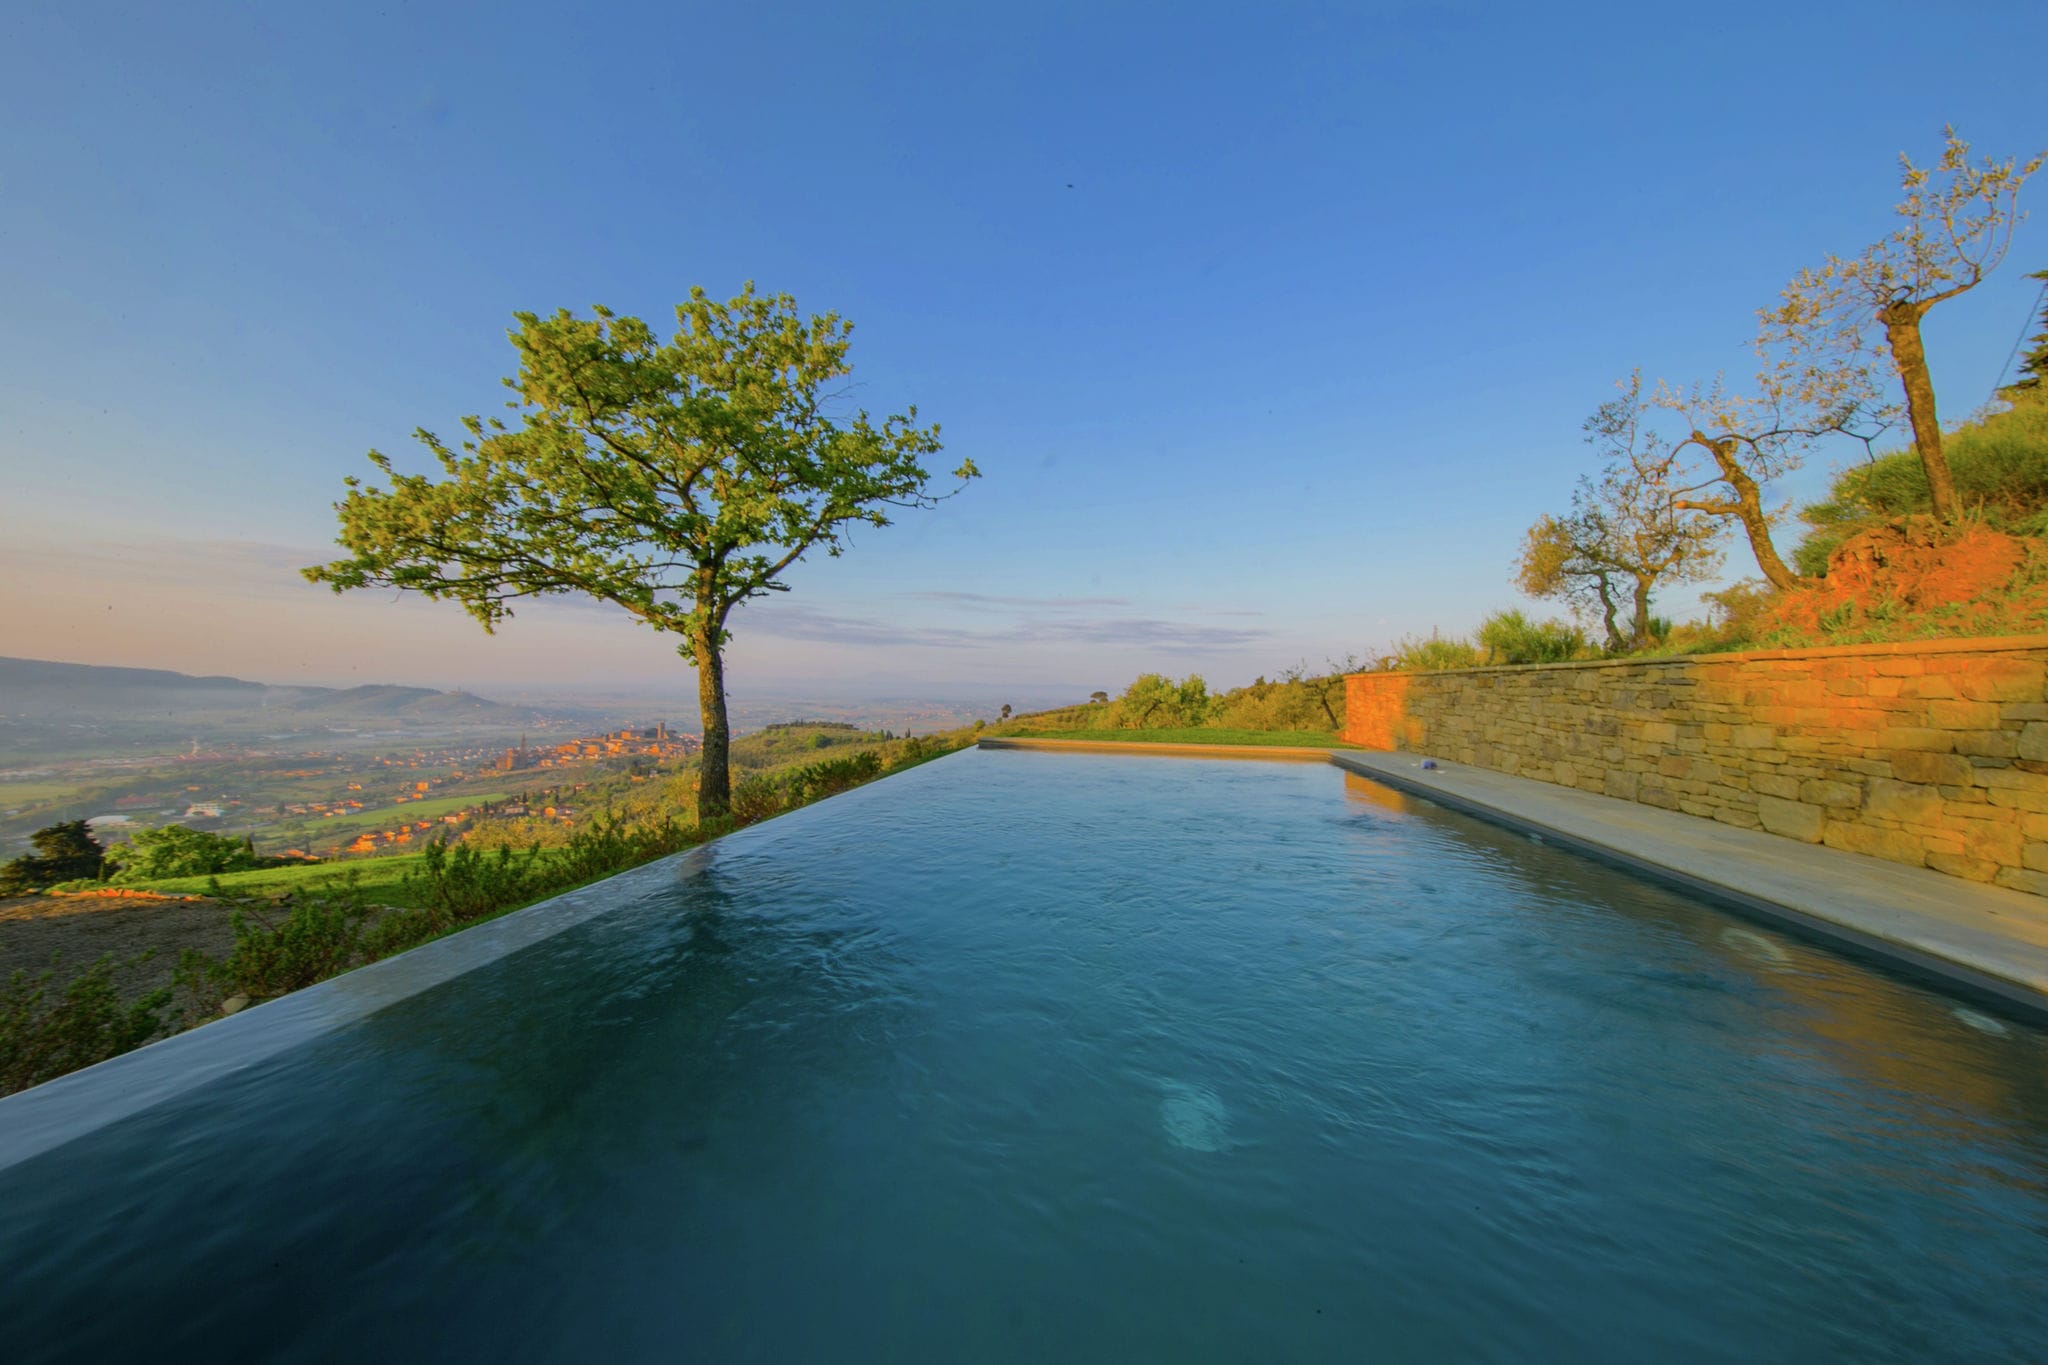 Villa met privézwembad op een prachtige locatie, adembenemend uitzicht